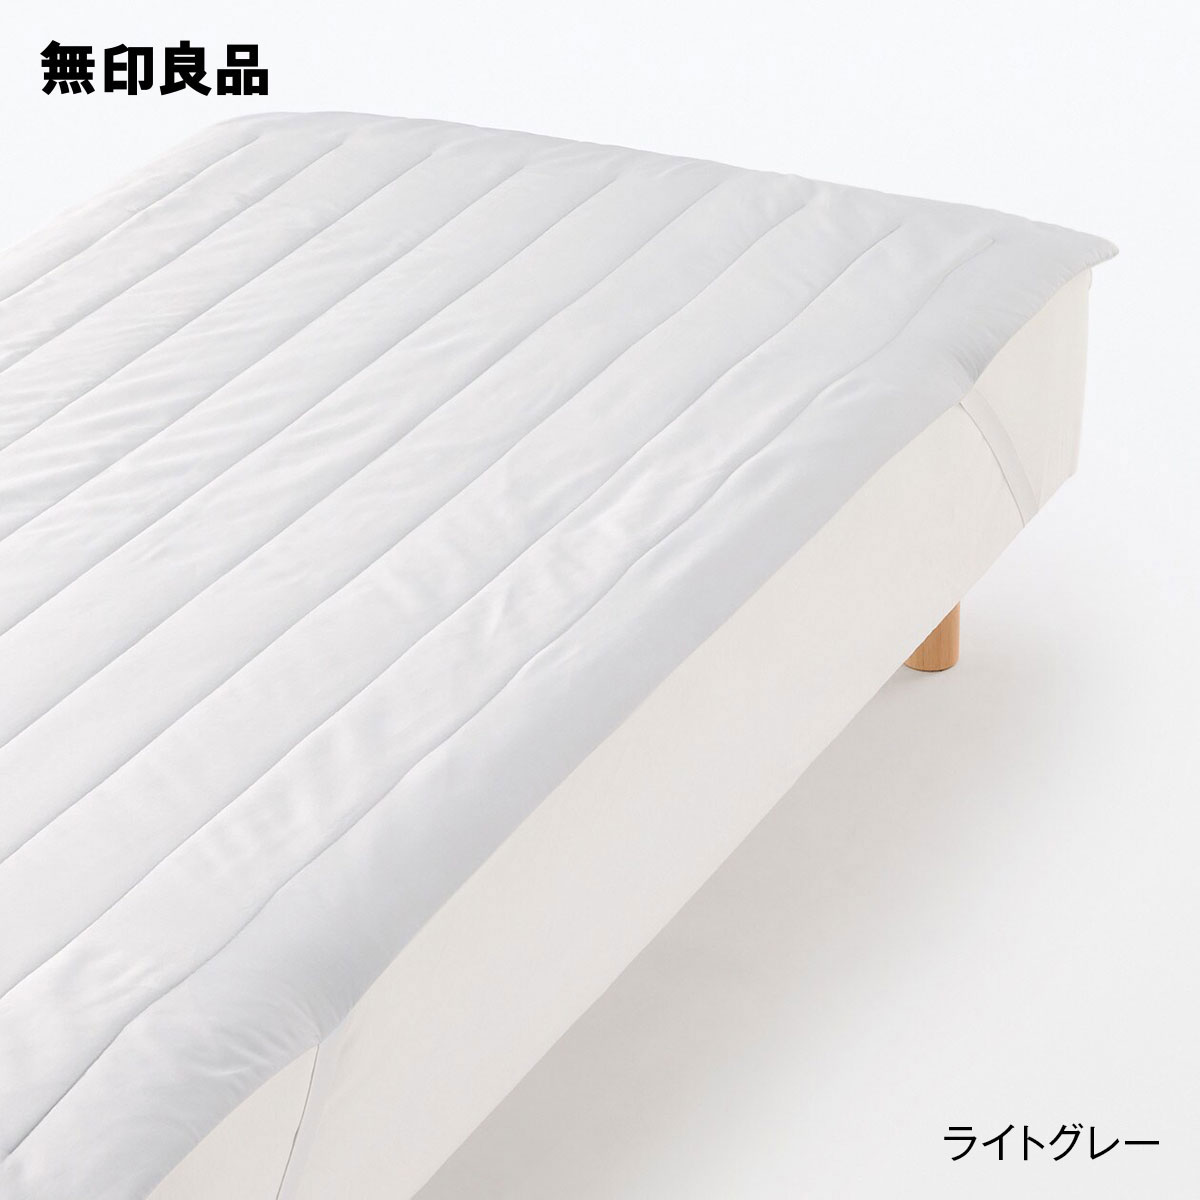 無印良品の【スモール】天然由来の繊維リヨセル 敷パッド・ 83×200cm(布団・寝具)